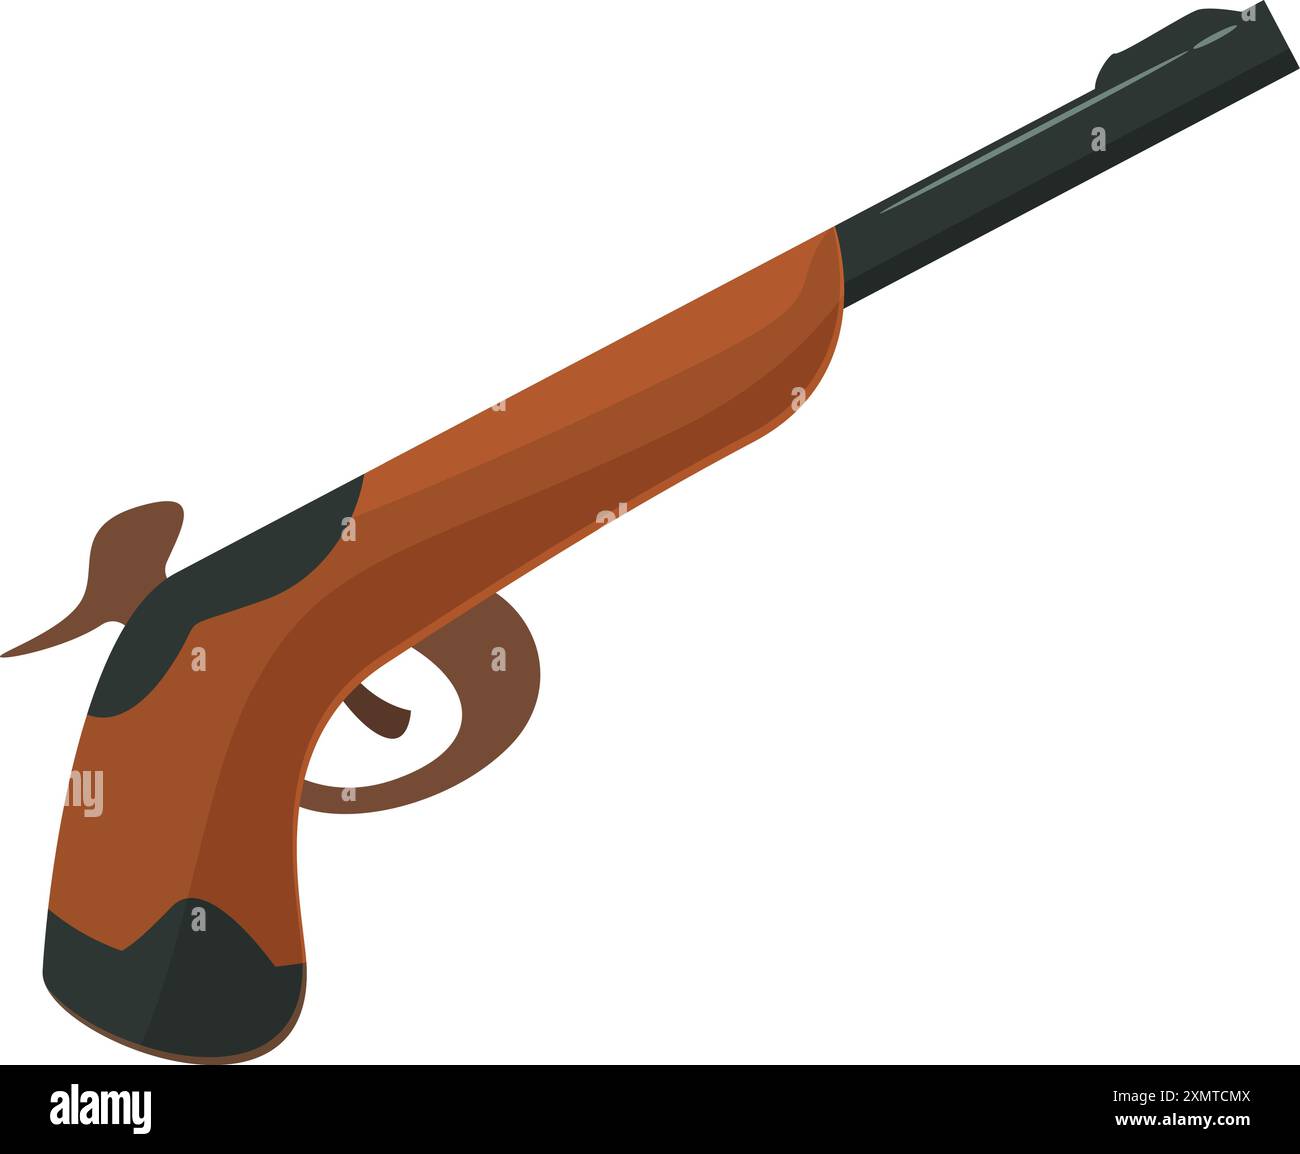 Eine alte Muskettenpistole mit Holzgriff und Metallfass liegt auf weißem Hintergrund Stock Vektor